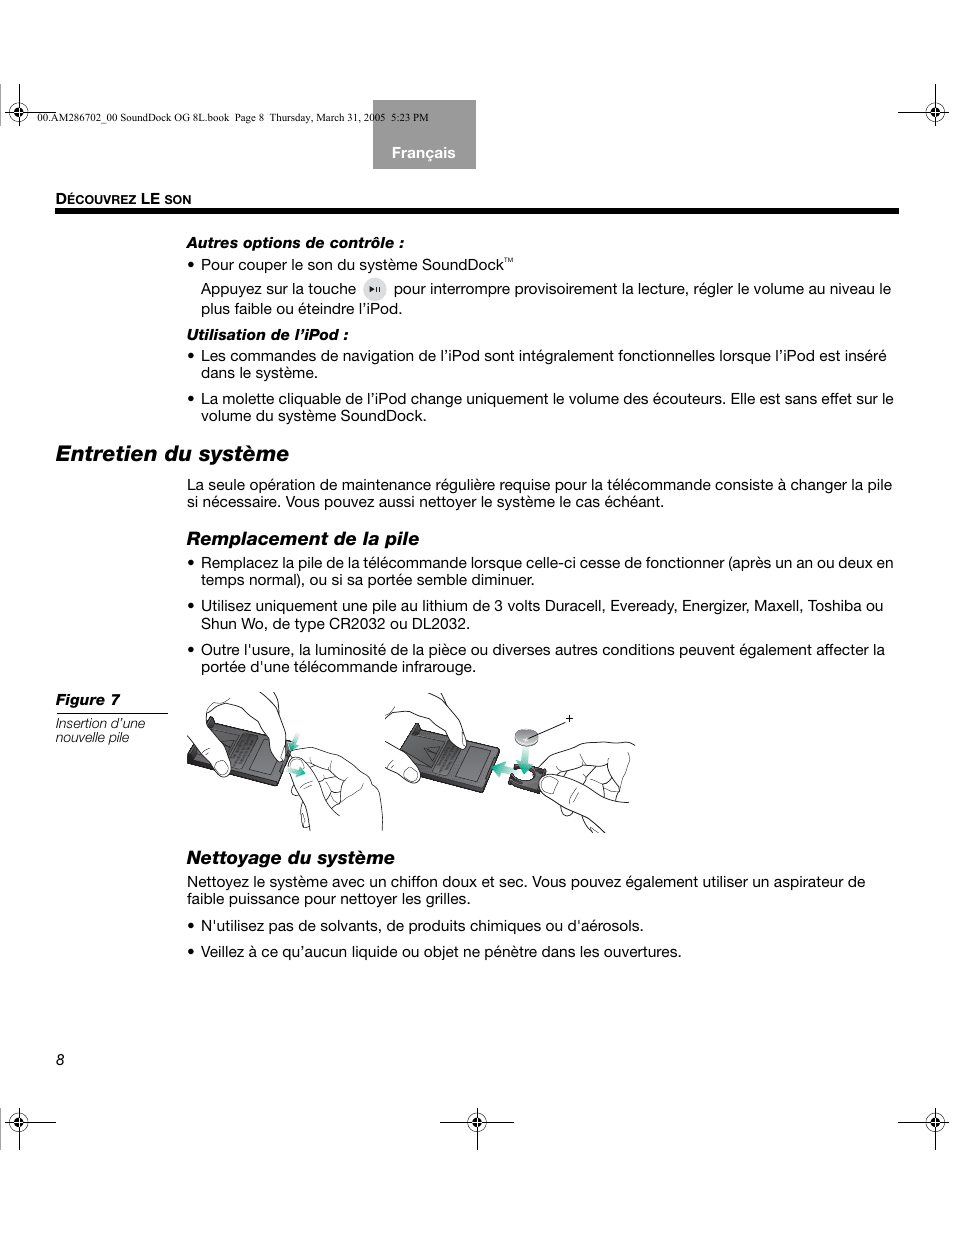 Entretien du système, Remplacement de la pile, Nettoyage du système | Bose SoundDock User Manual | Page 42 / 72